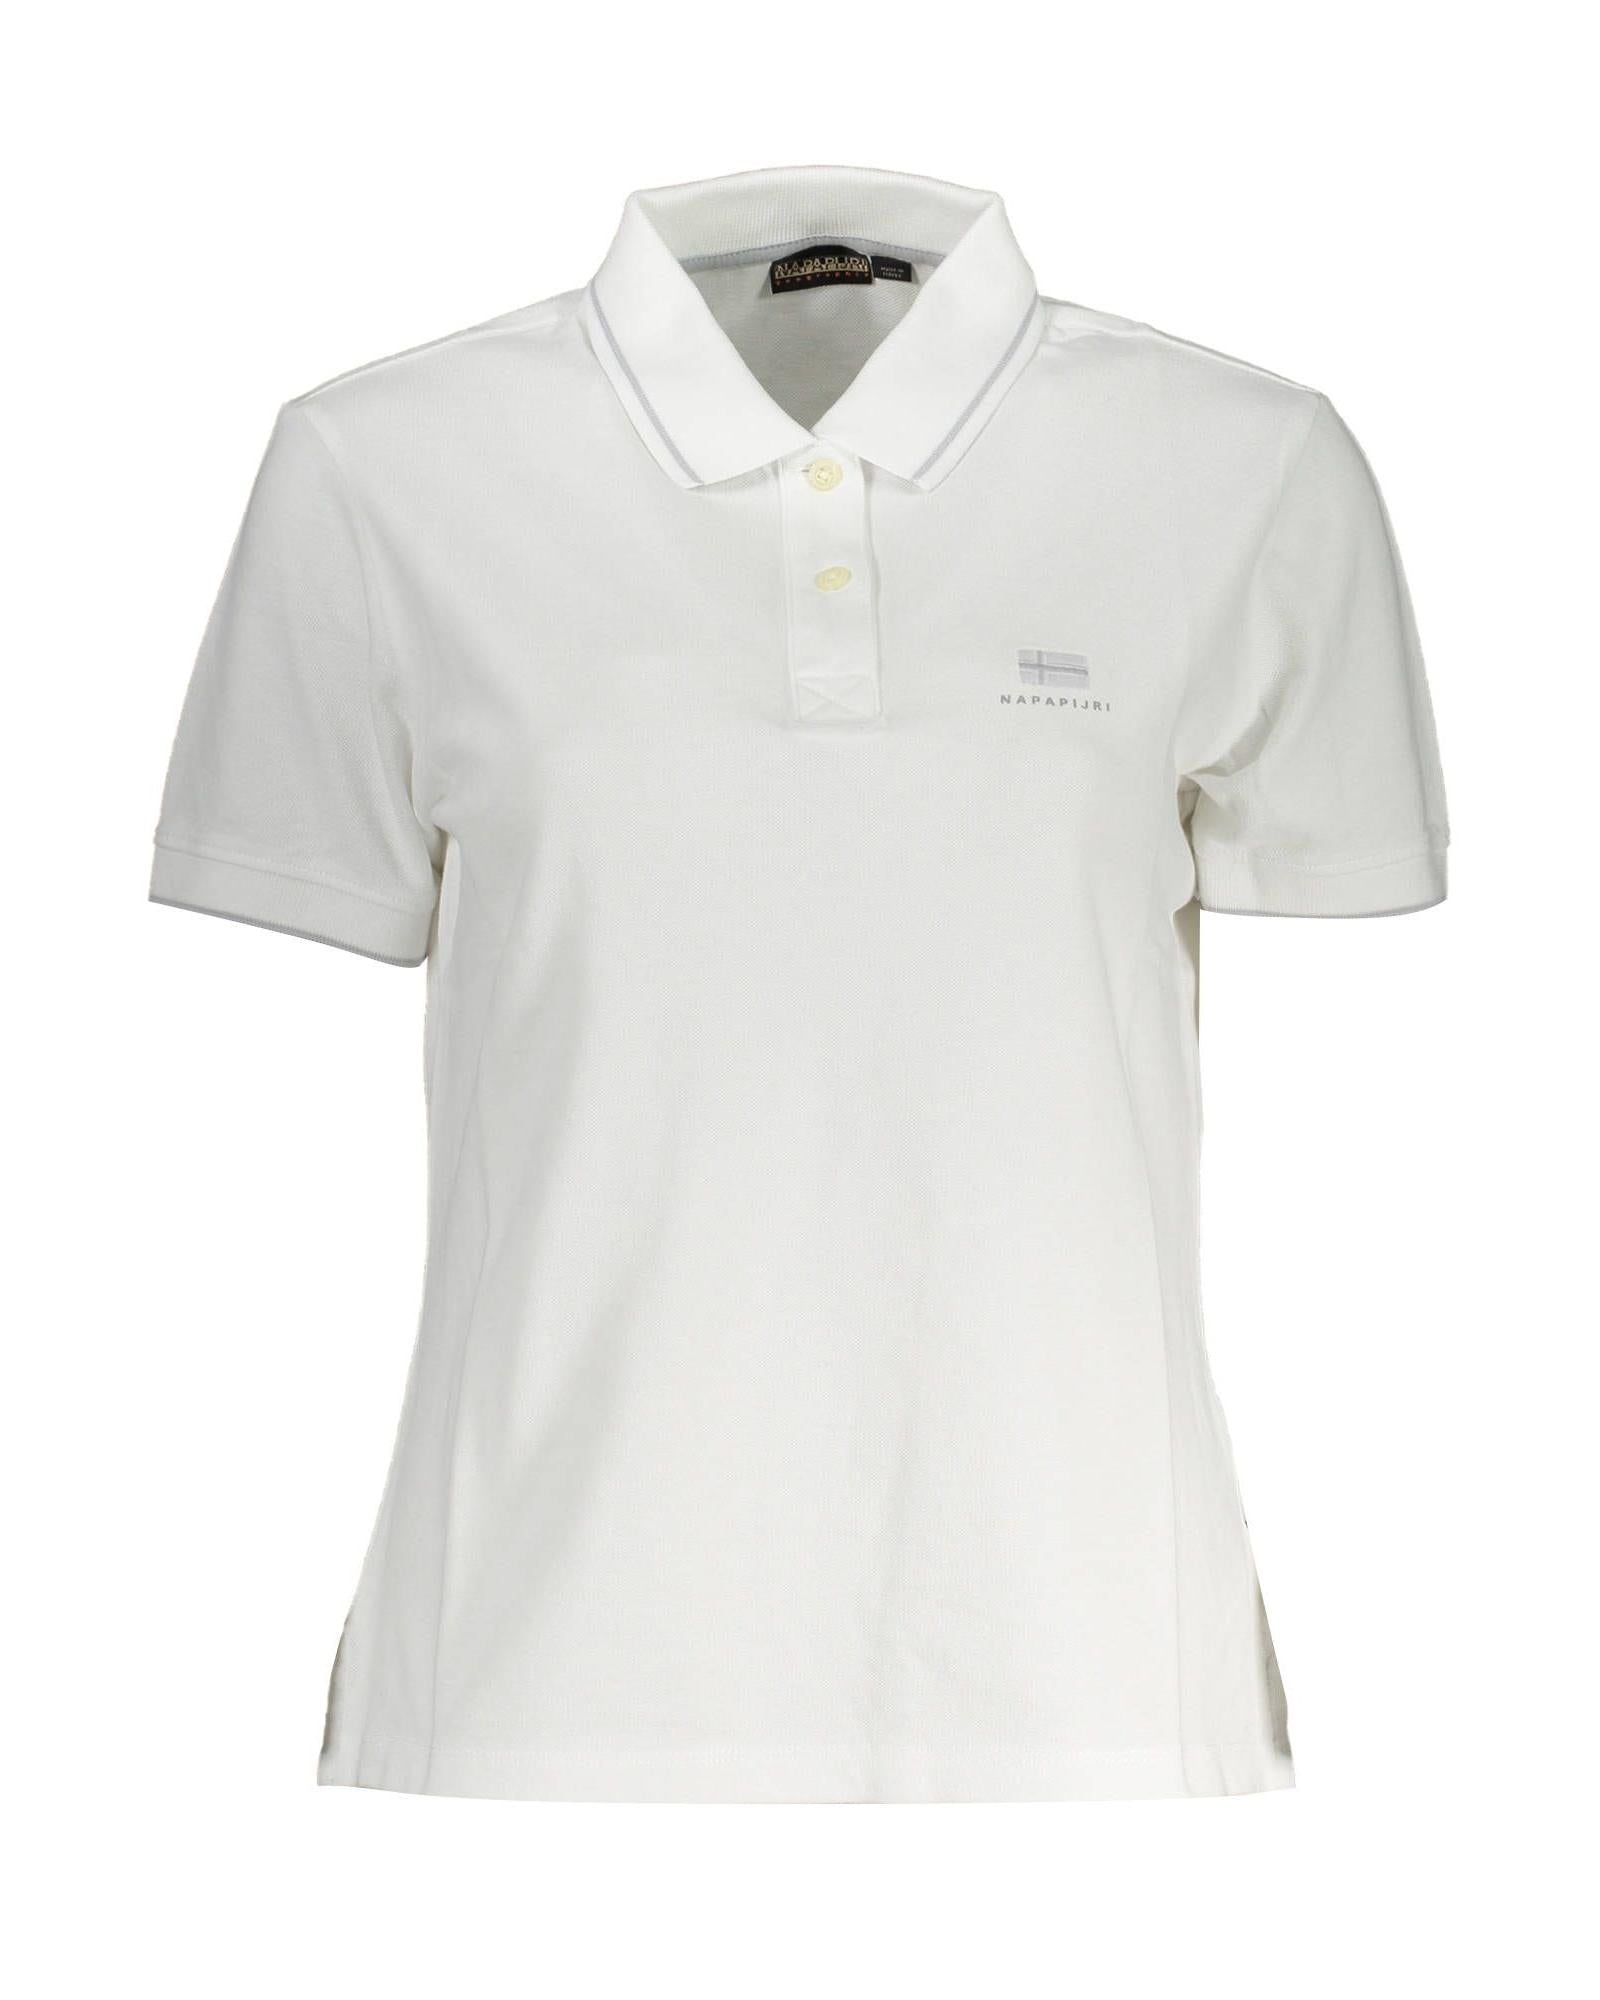 Men's White Cotton Polo Shirt - S